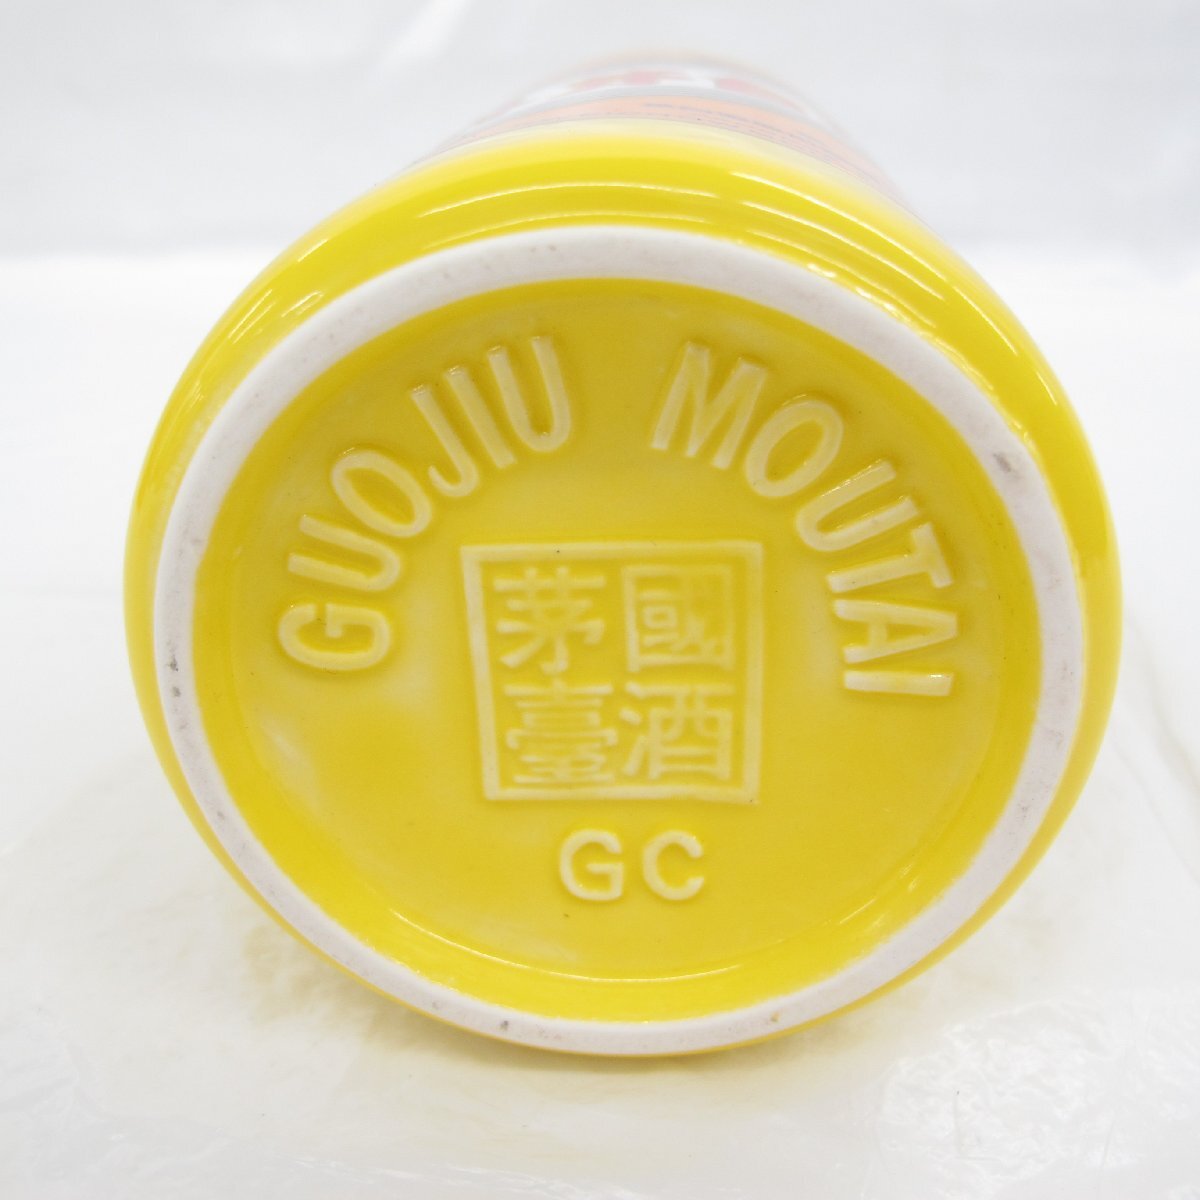 [ not yet . plug ]... pcs sake mao Thai sake . star wheat label . main bottle not yet year 2015 MOUTAI KWEICHOW China sake 500ml 53% 1040g box / booklet attaching 11576330 0515